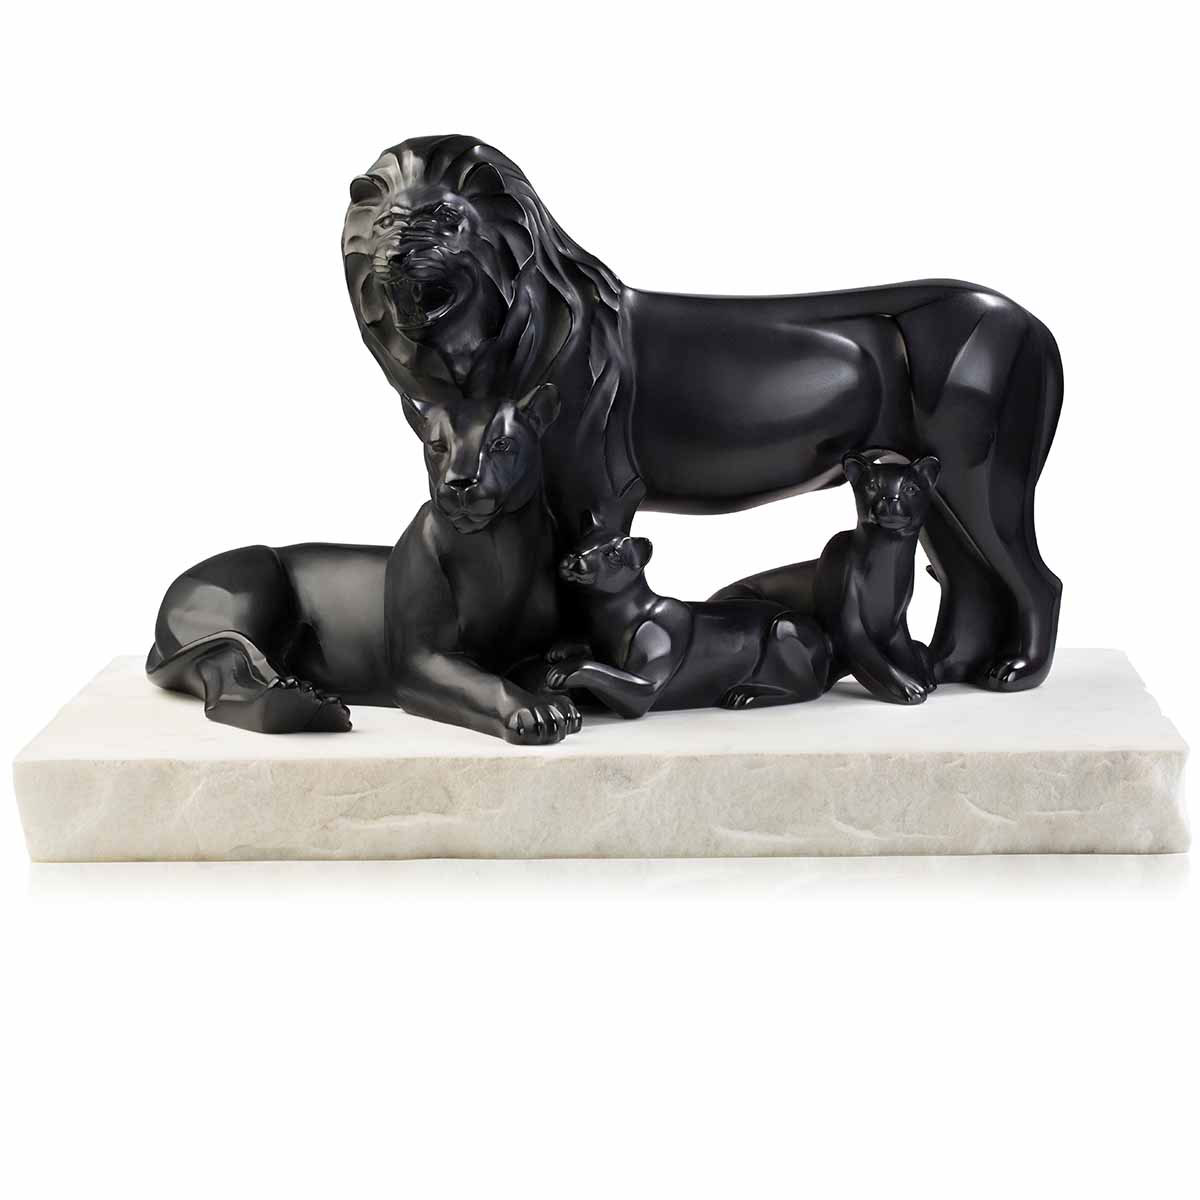 Lalique Lions 15" Sculpture, Black, Limited Edition